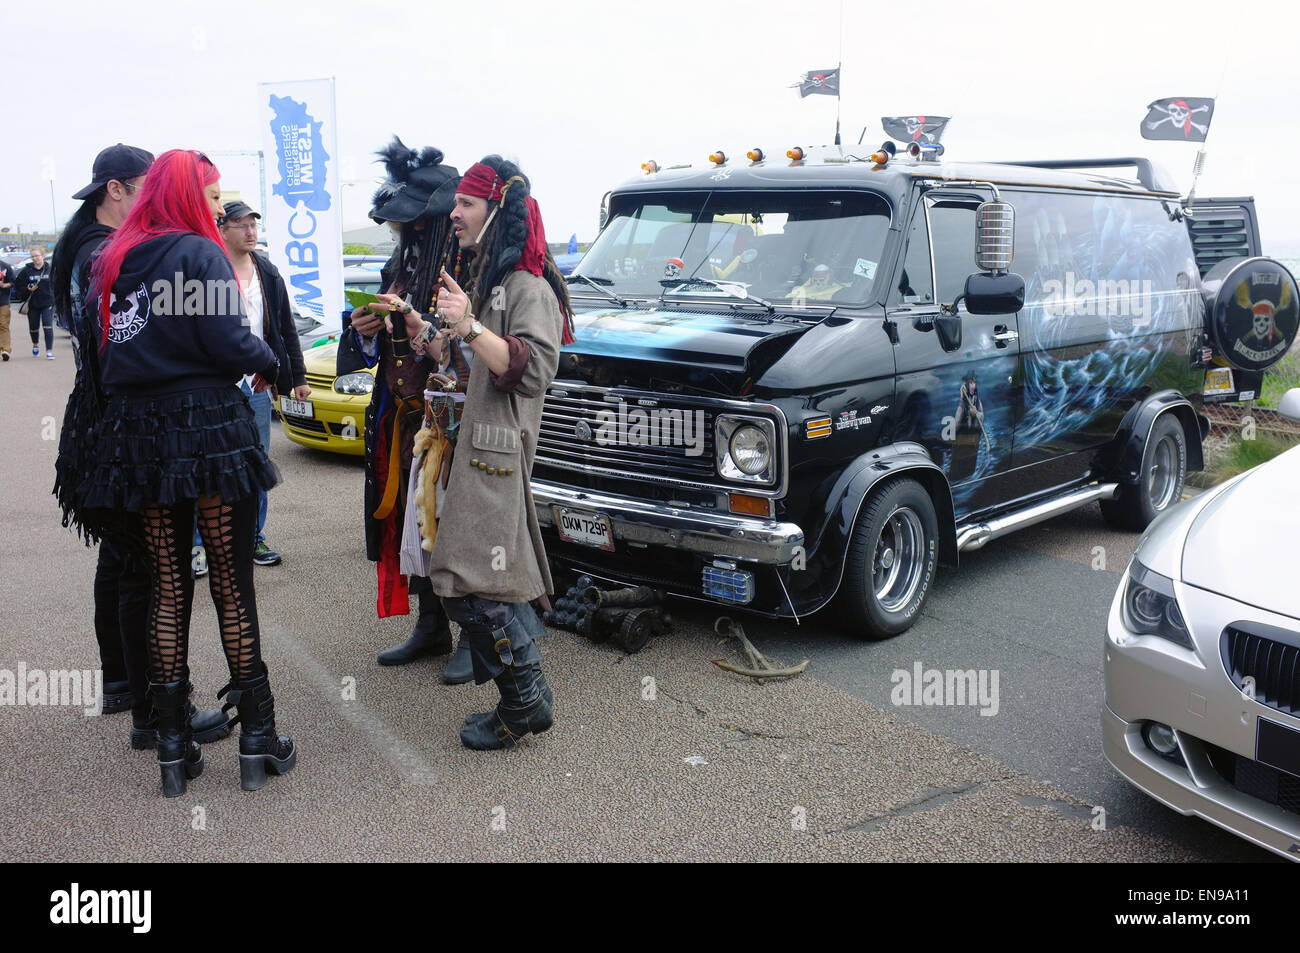 Eine Gruppe verkleidet als Piraten vor ihren amerikanischen van bei einem Auto-Event am Madeira Drive in Brighton stehen. Stockfoto